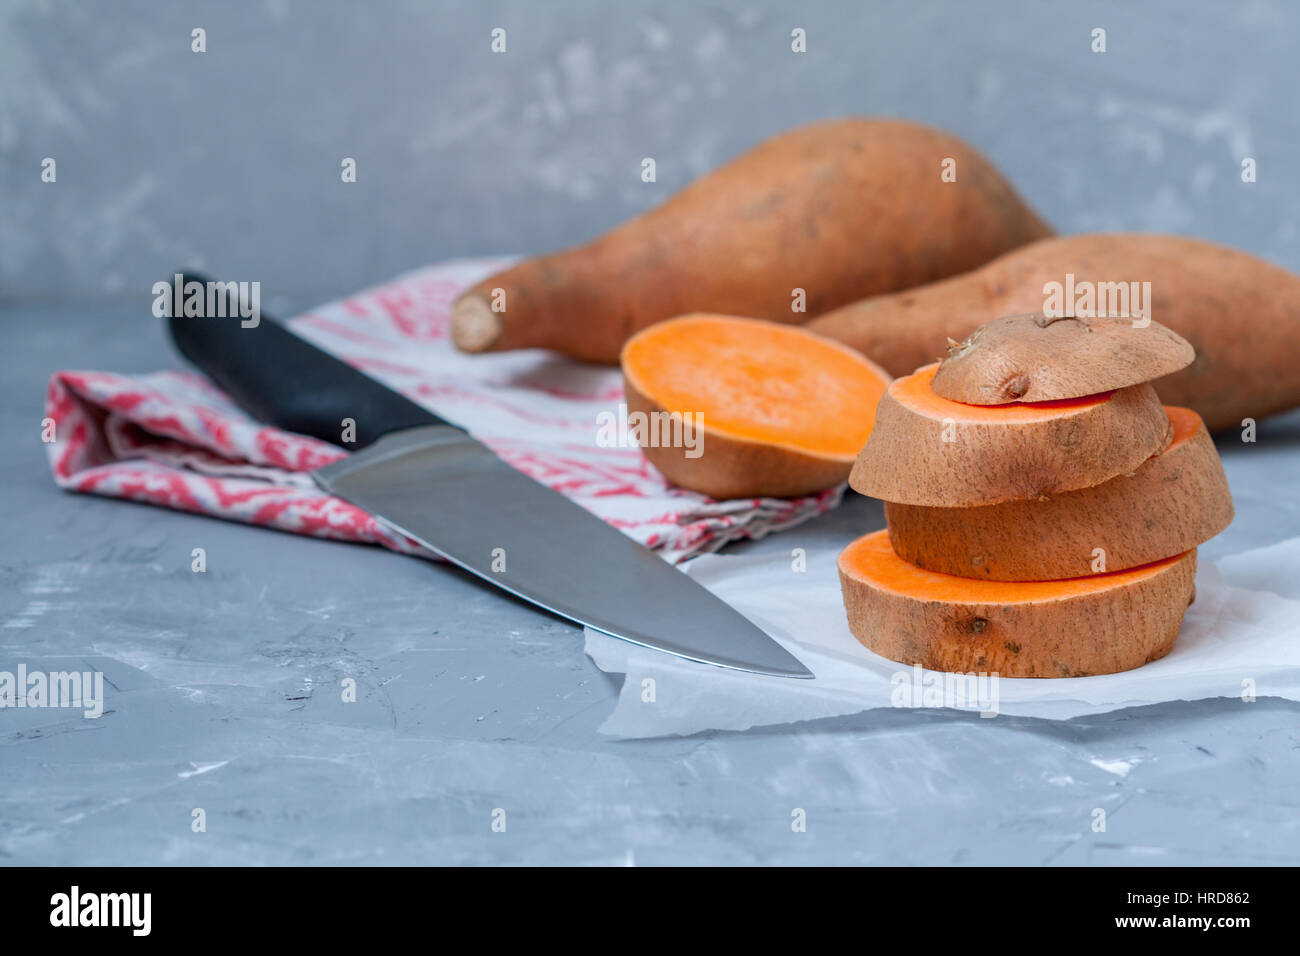 Roh in Scheiben geschnitten und ganze süße Kartoffeln auf einem dunklen Hintergrund rustikal. Stockfoto